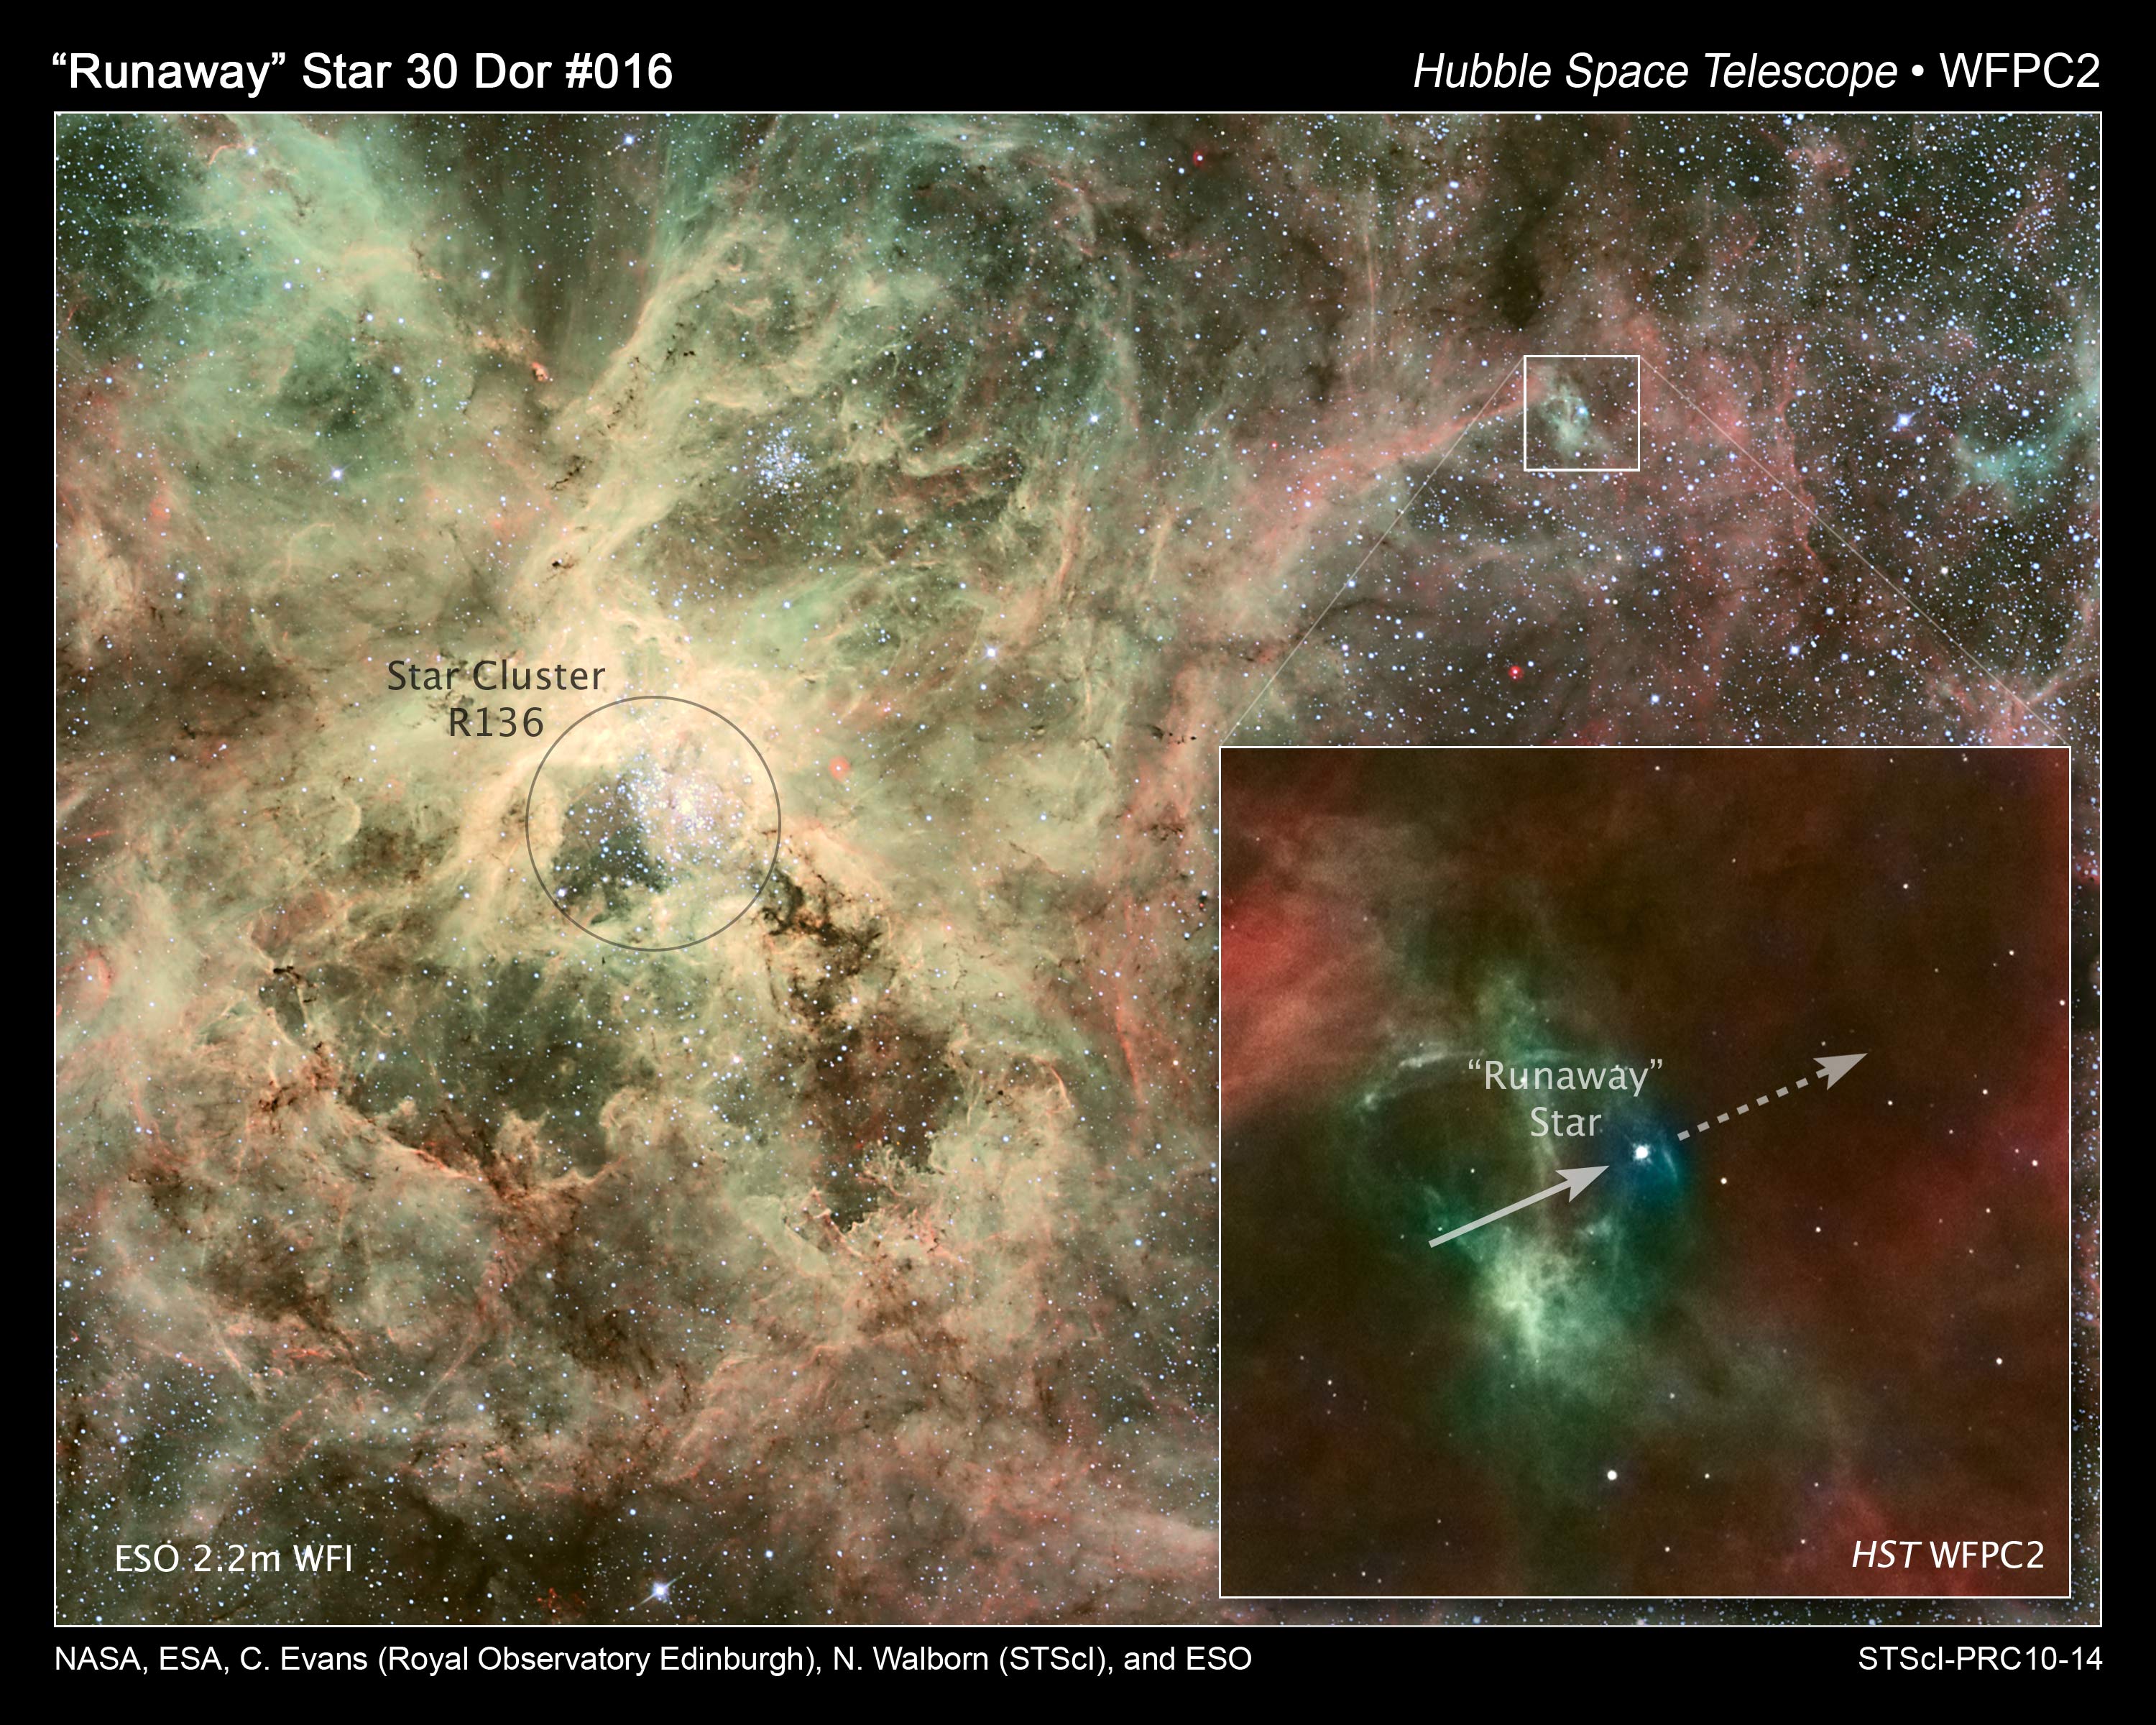 Gasståken 30 Doradus i Den store magellanske sky og den spesielle stjernehopen R136. Nede til høyre er den løpske, svært tunge stjernen innfelt og bevegelsesretningen antydet. Foto: NASA, ESA, C. Evans (Royal Observatory Edinburgh), N. Walborn (STScI) og ESO